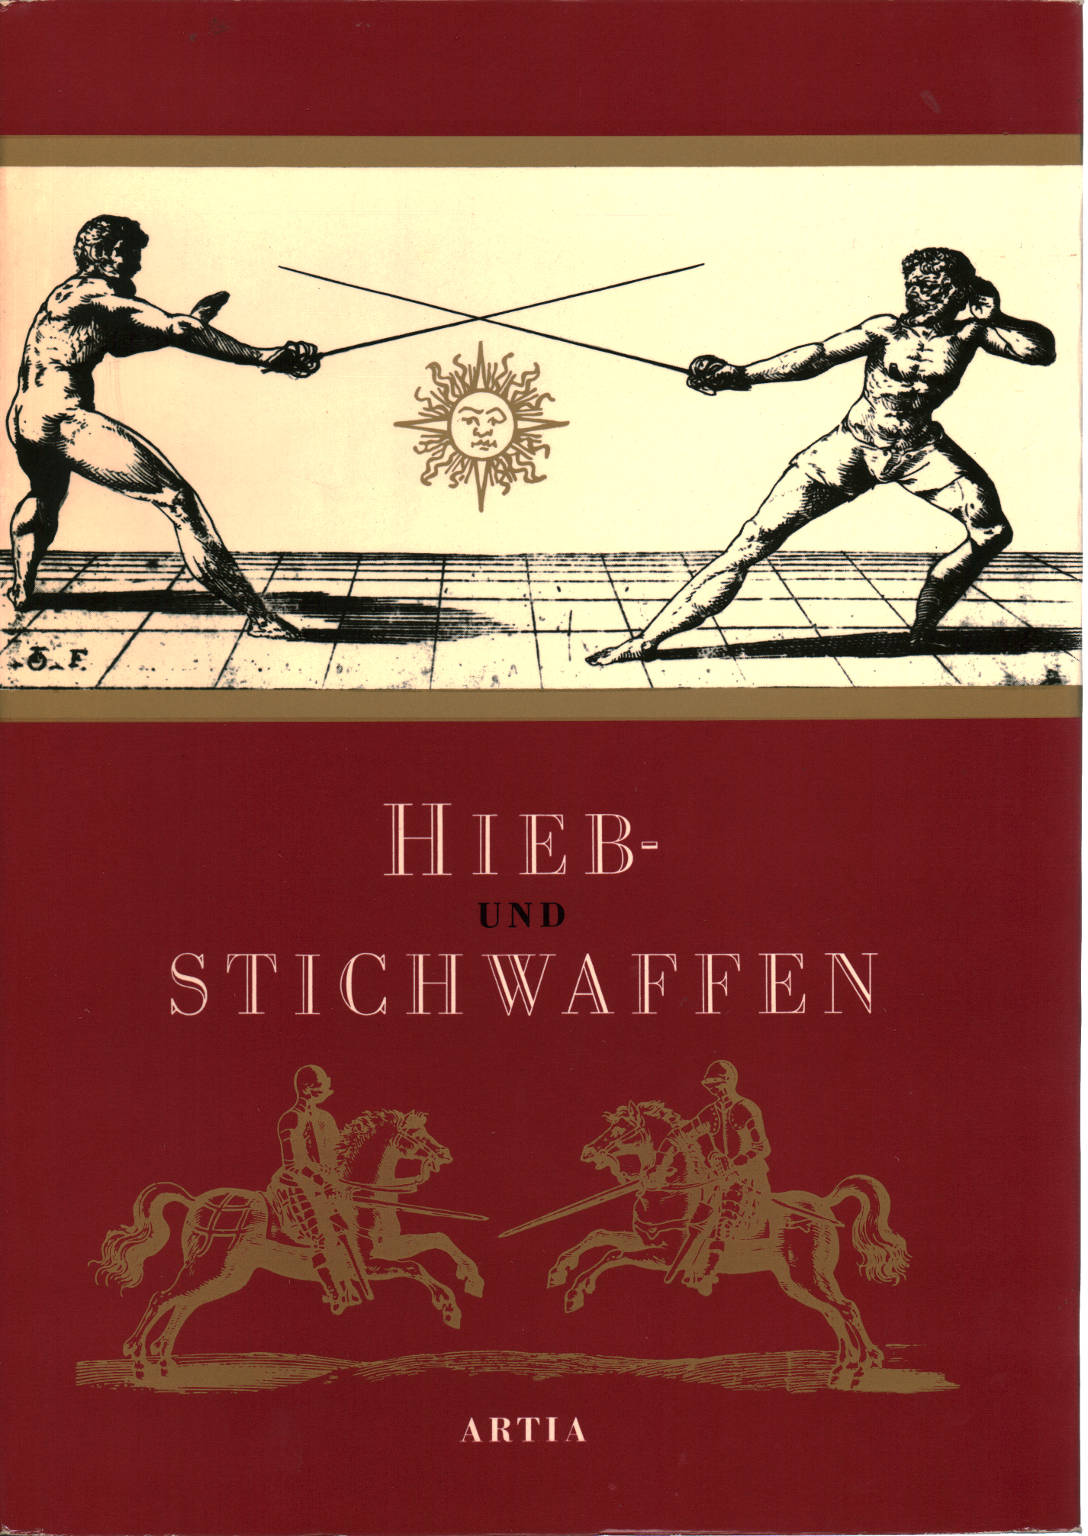 Hieb-und Stichwaffen, Eduard Wagner